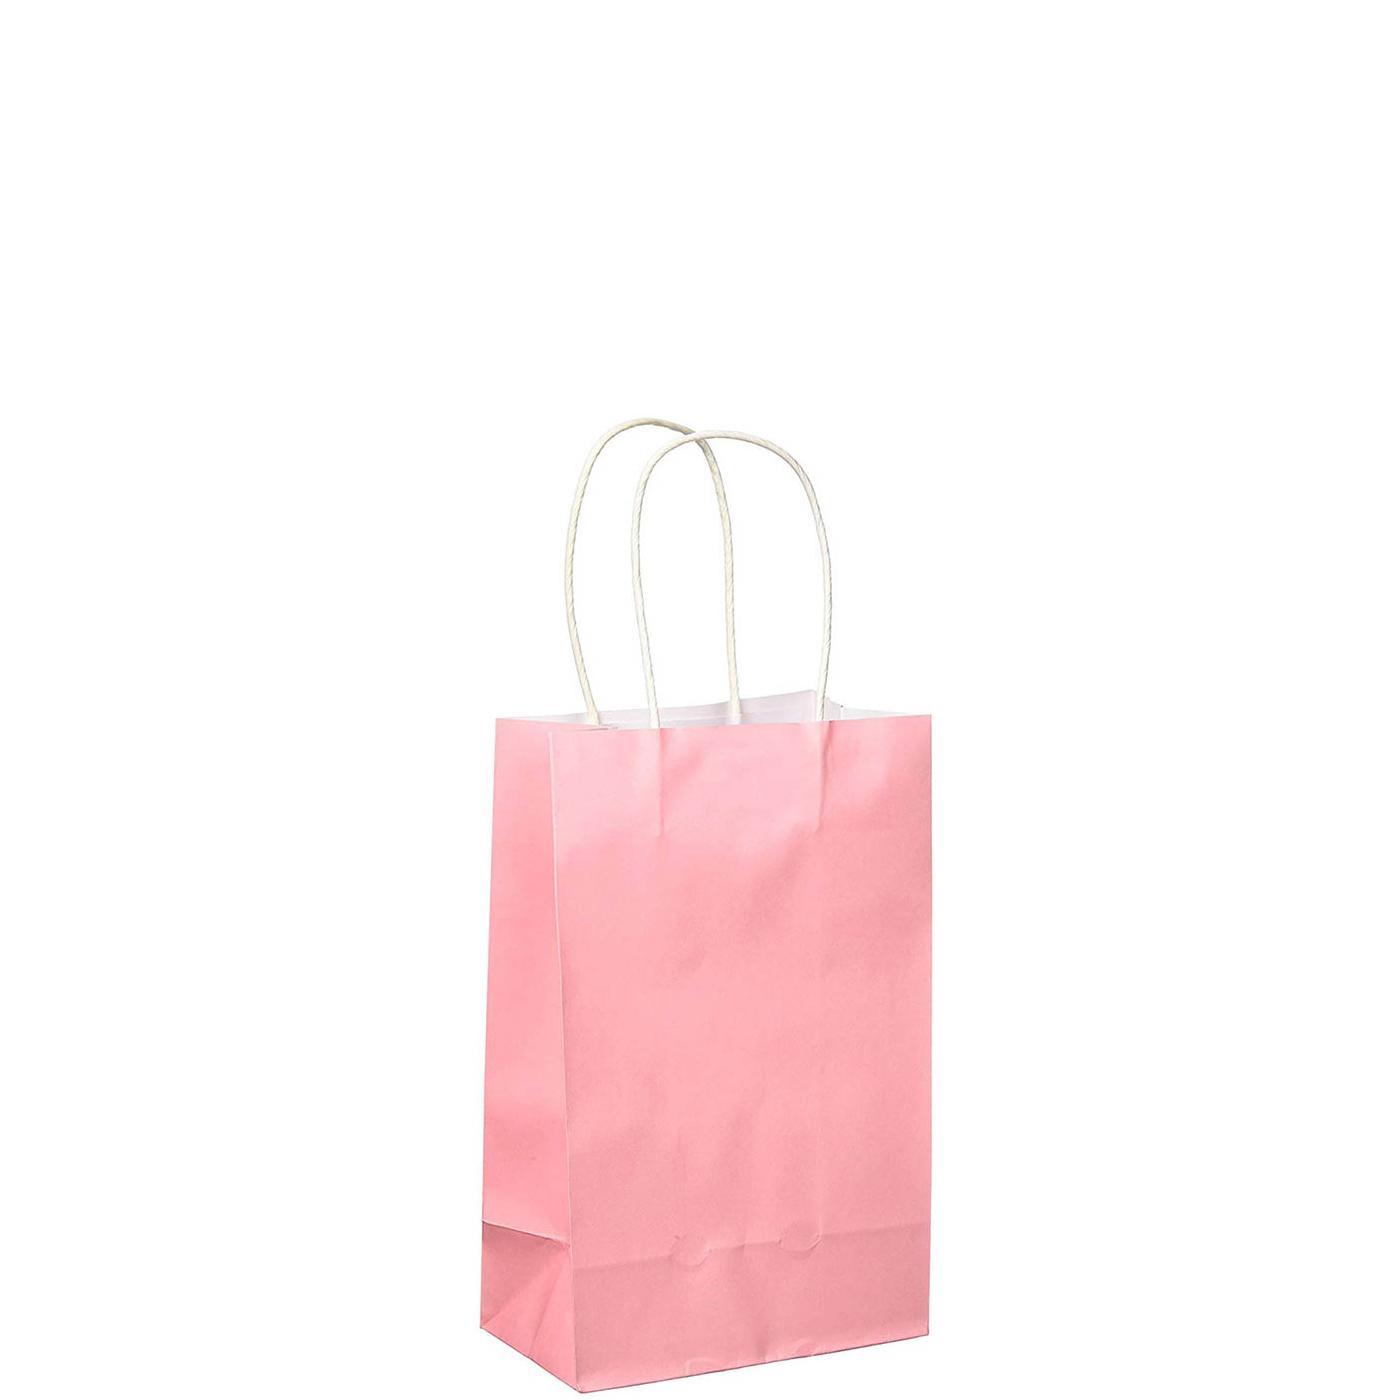 New Pink Cub Bag Value Pack 10pcs Party Favors - Party Centre - Party Centre